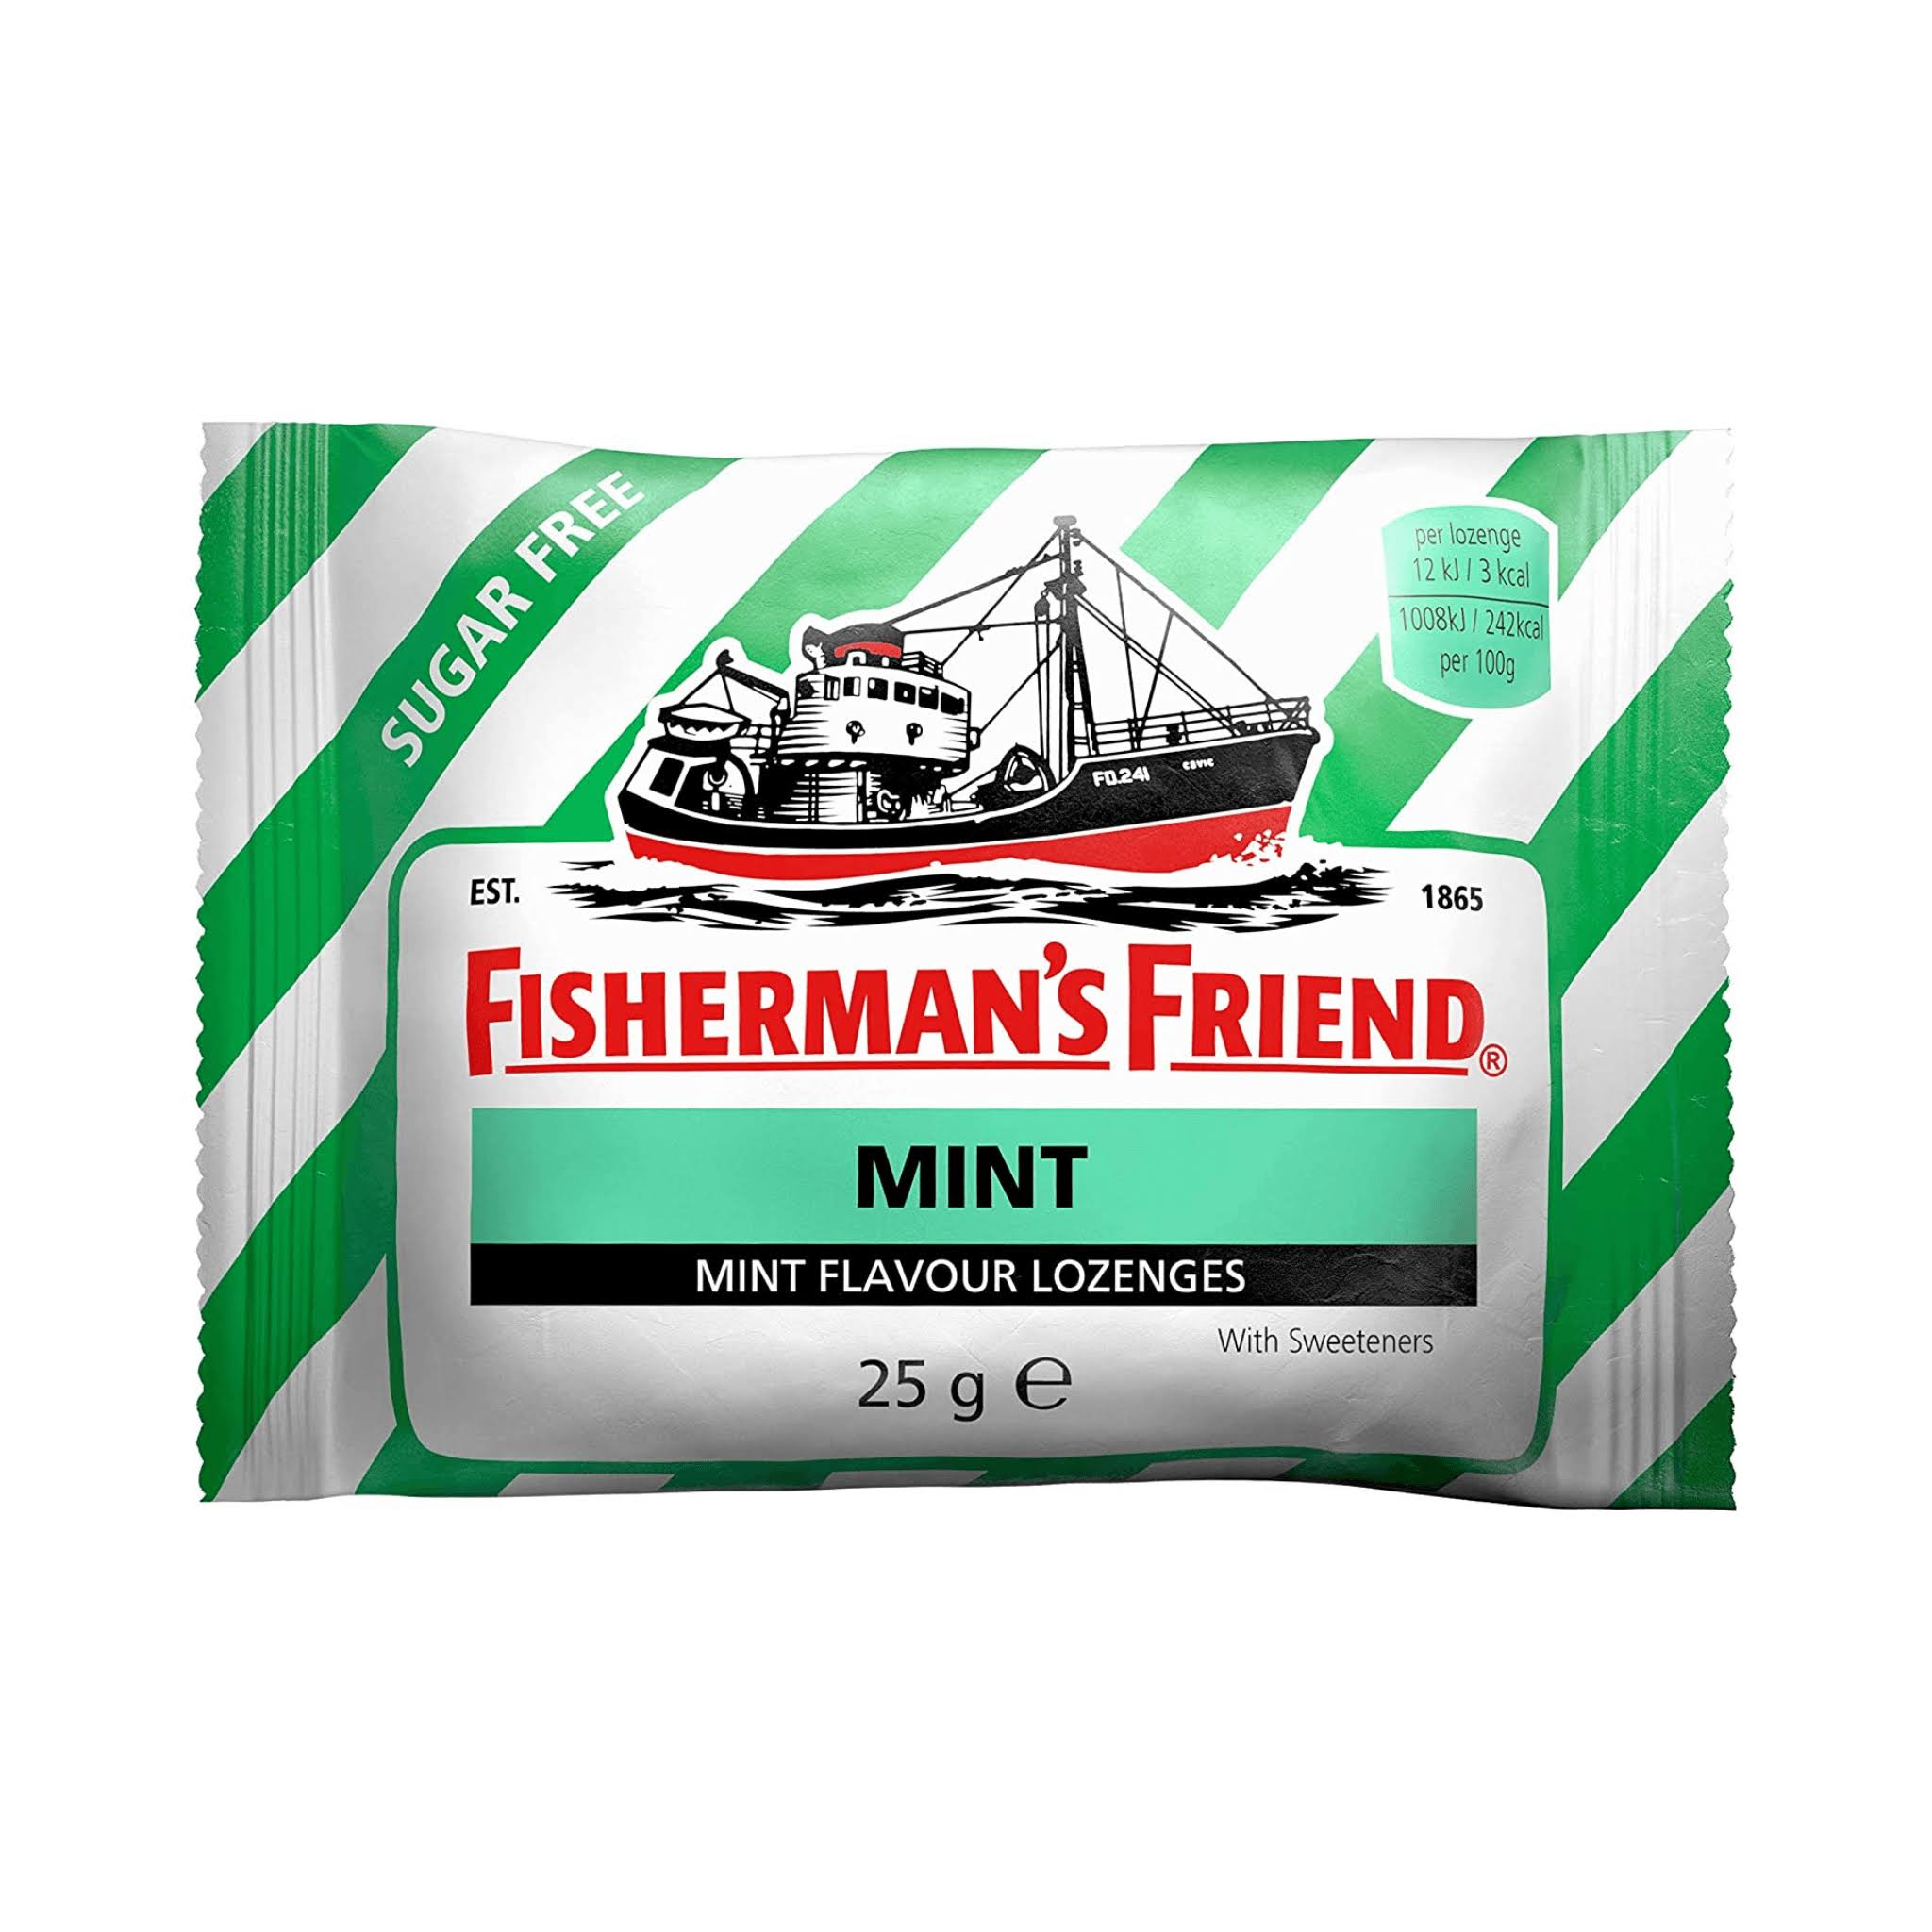 Fisherman's Friend Lozenges - 25g, Mint Flavour